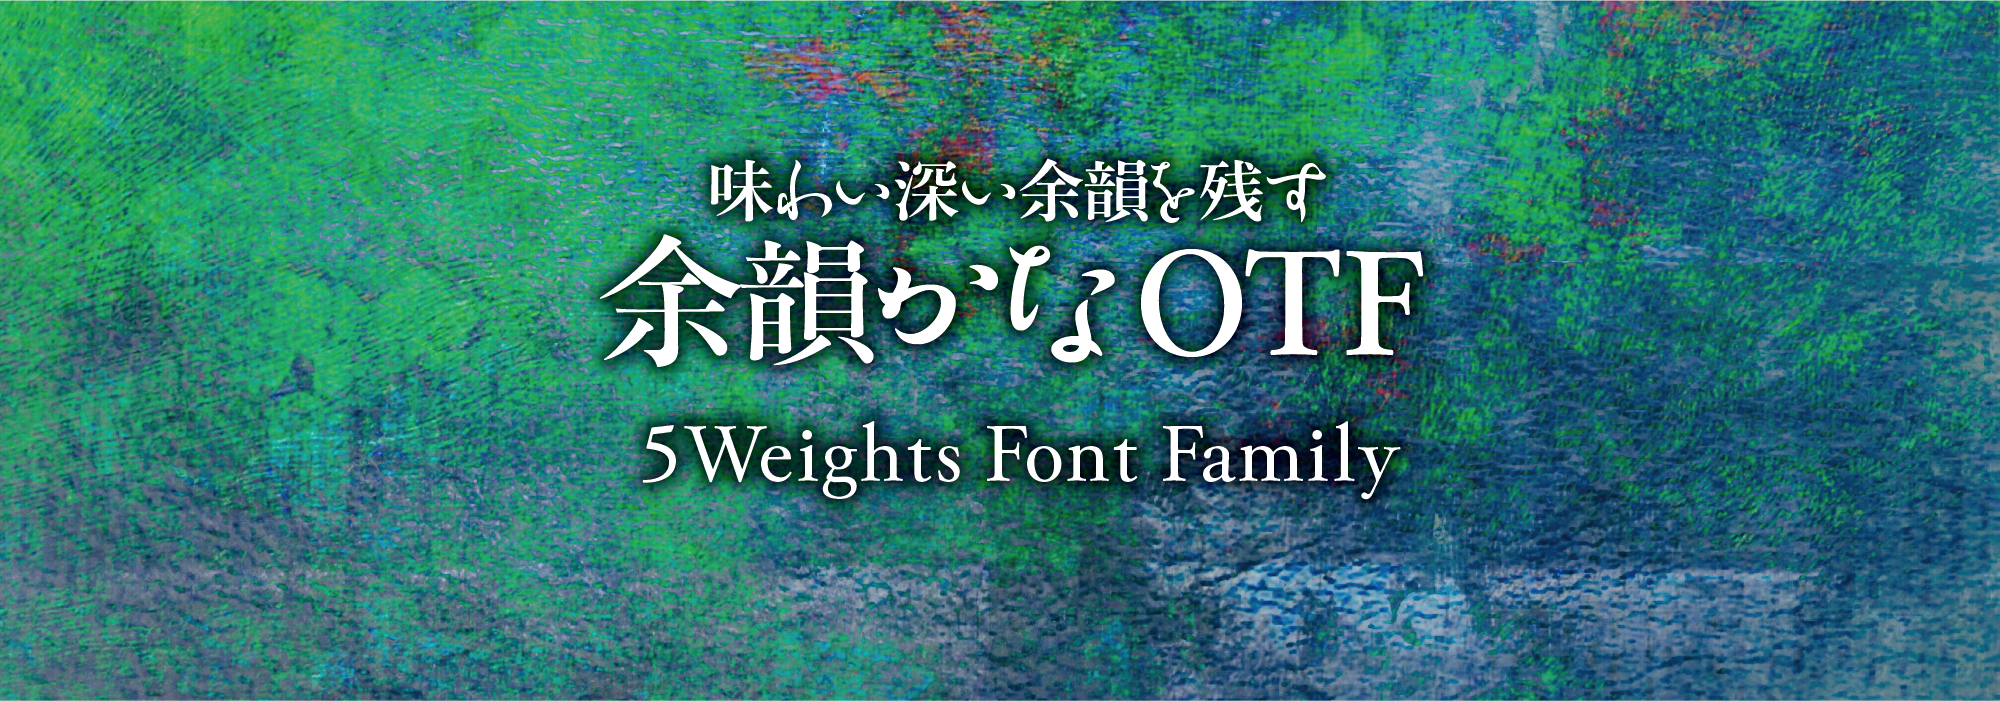 味わい深い余韻を残す 余韻かな 5 Weights Font Family